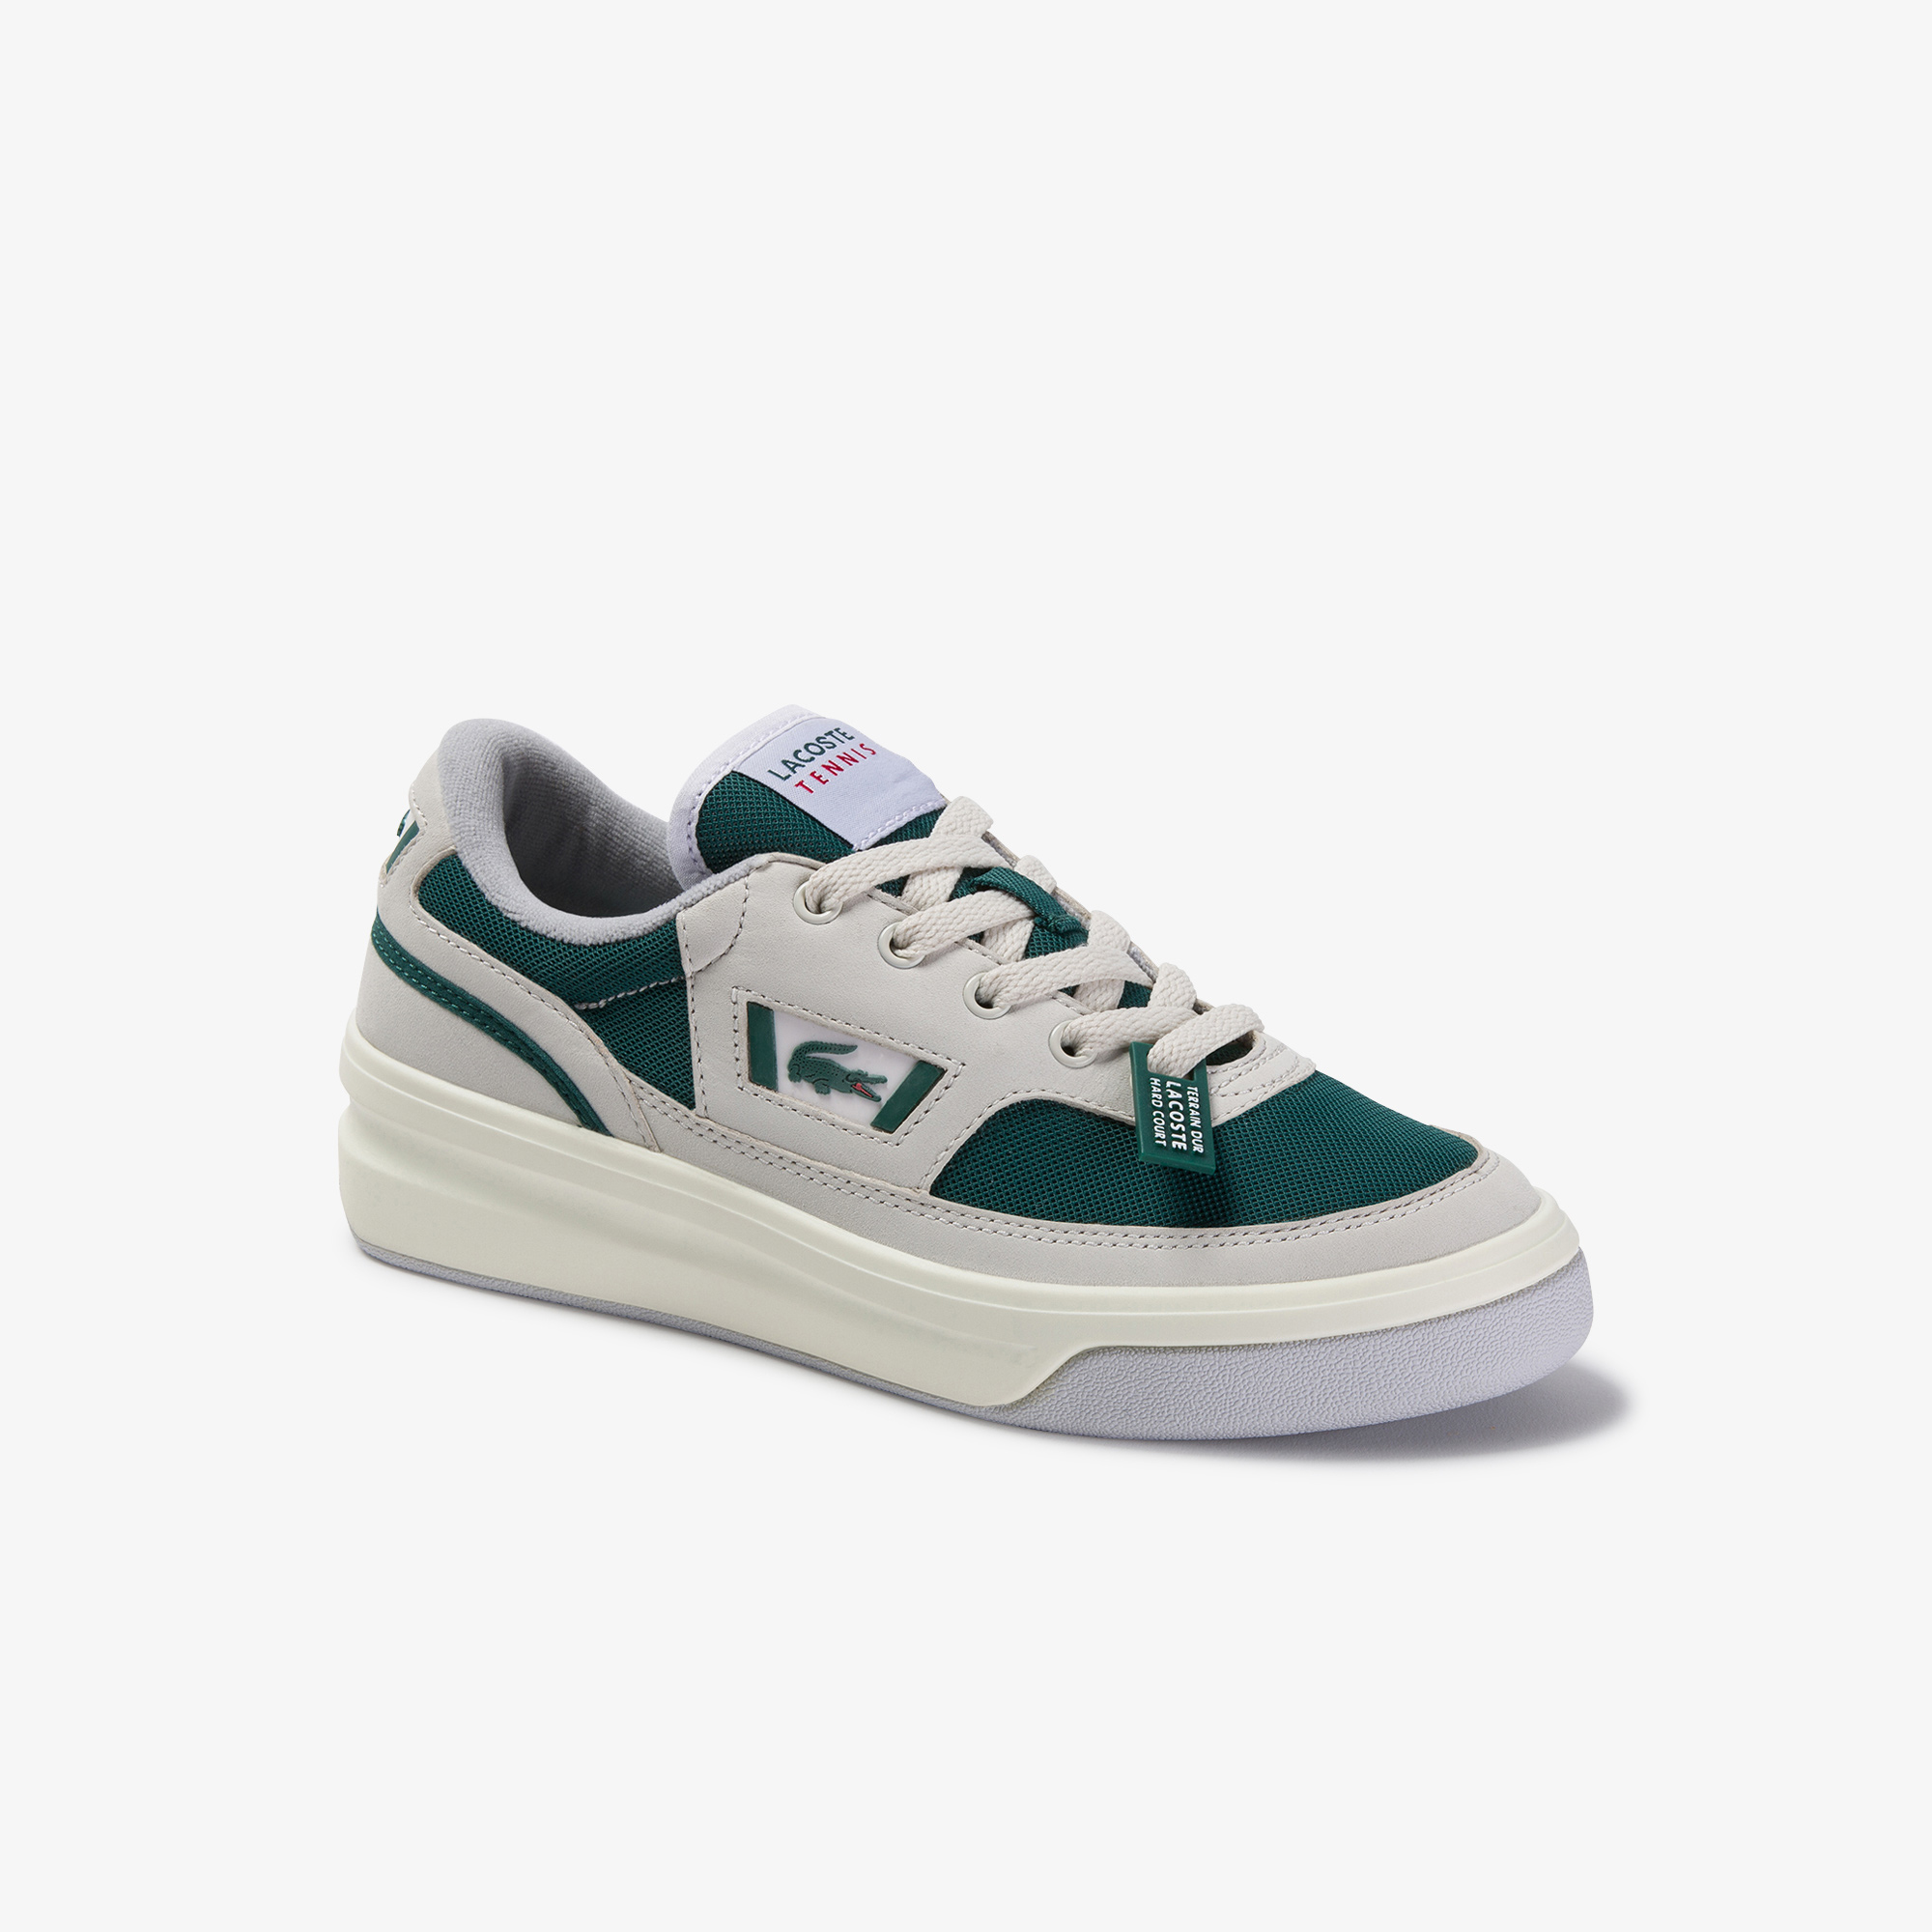 Lacoste G80 Og 120 1 Sfa Kadın Beyaz - Koyu Yeşil Deri Sneaker. 1